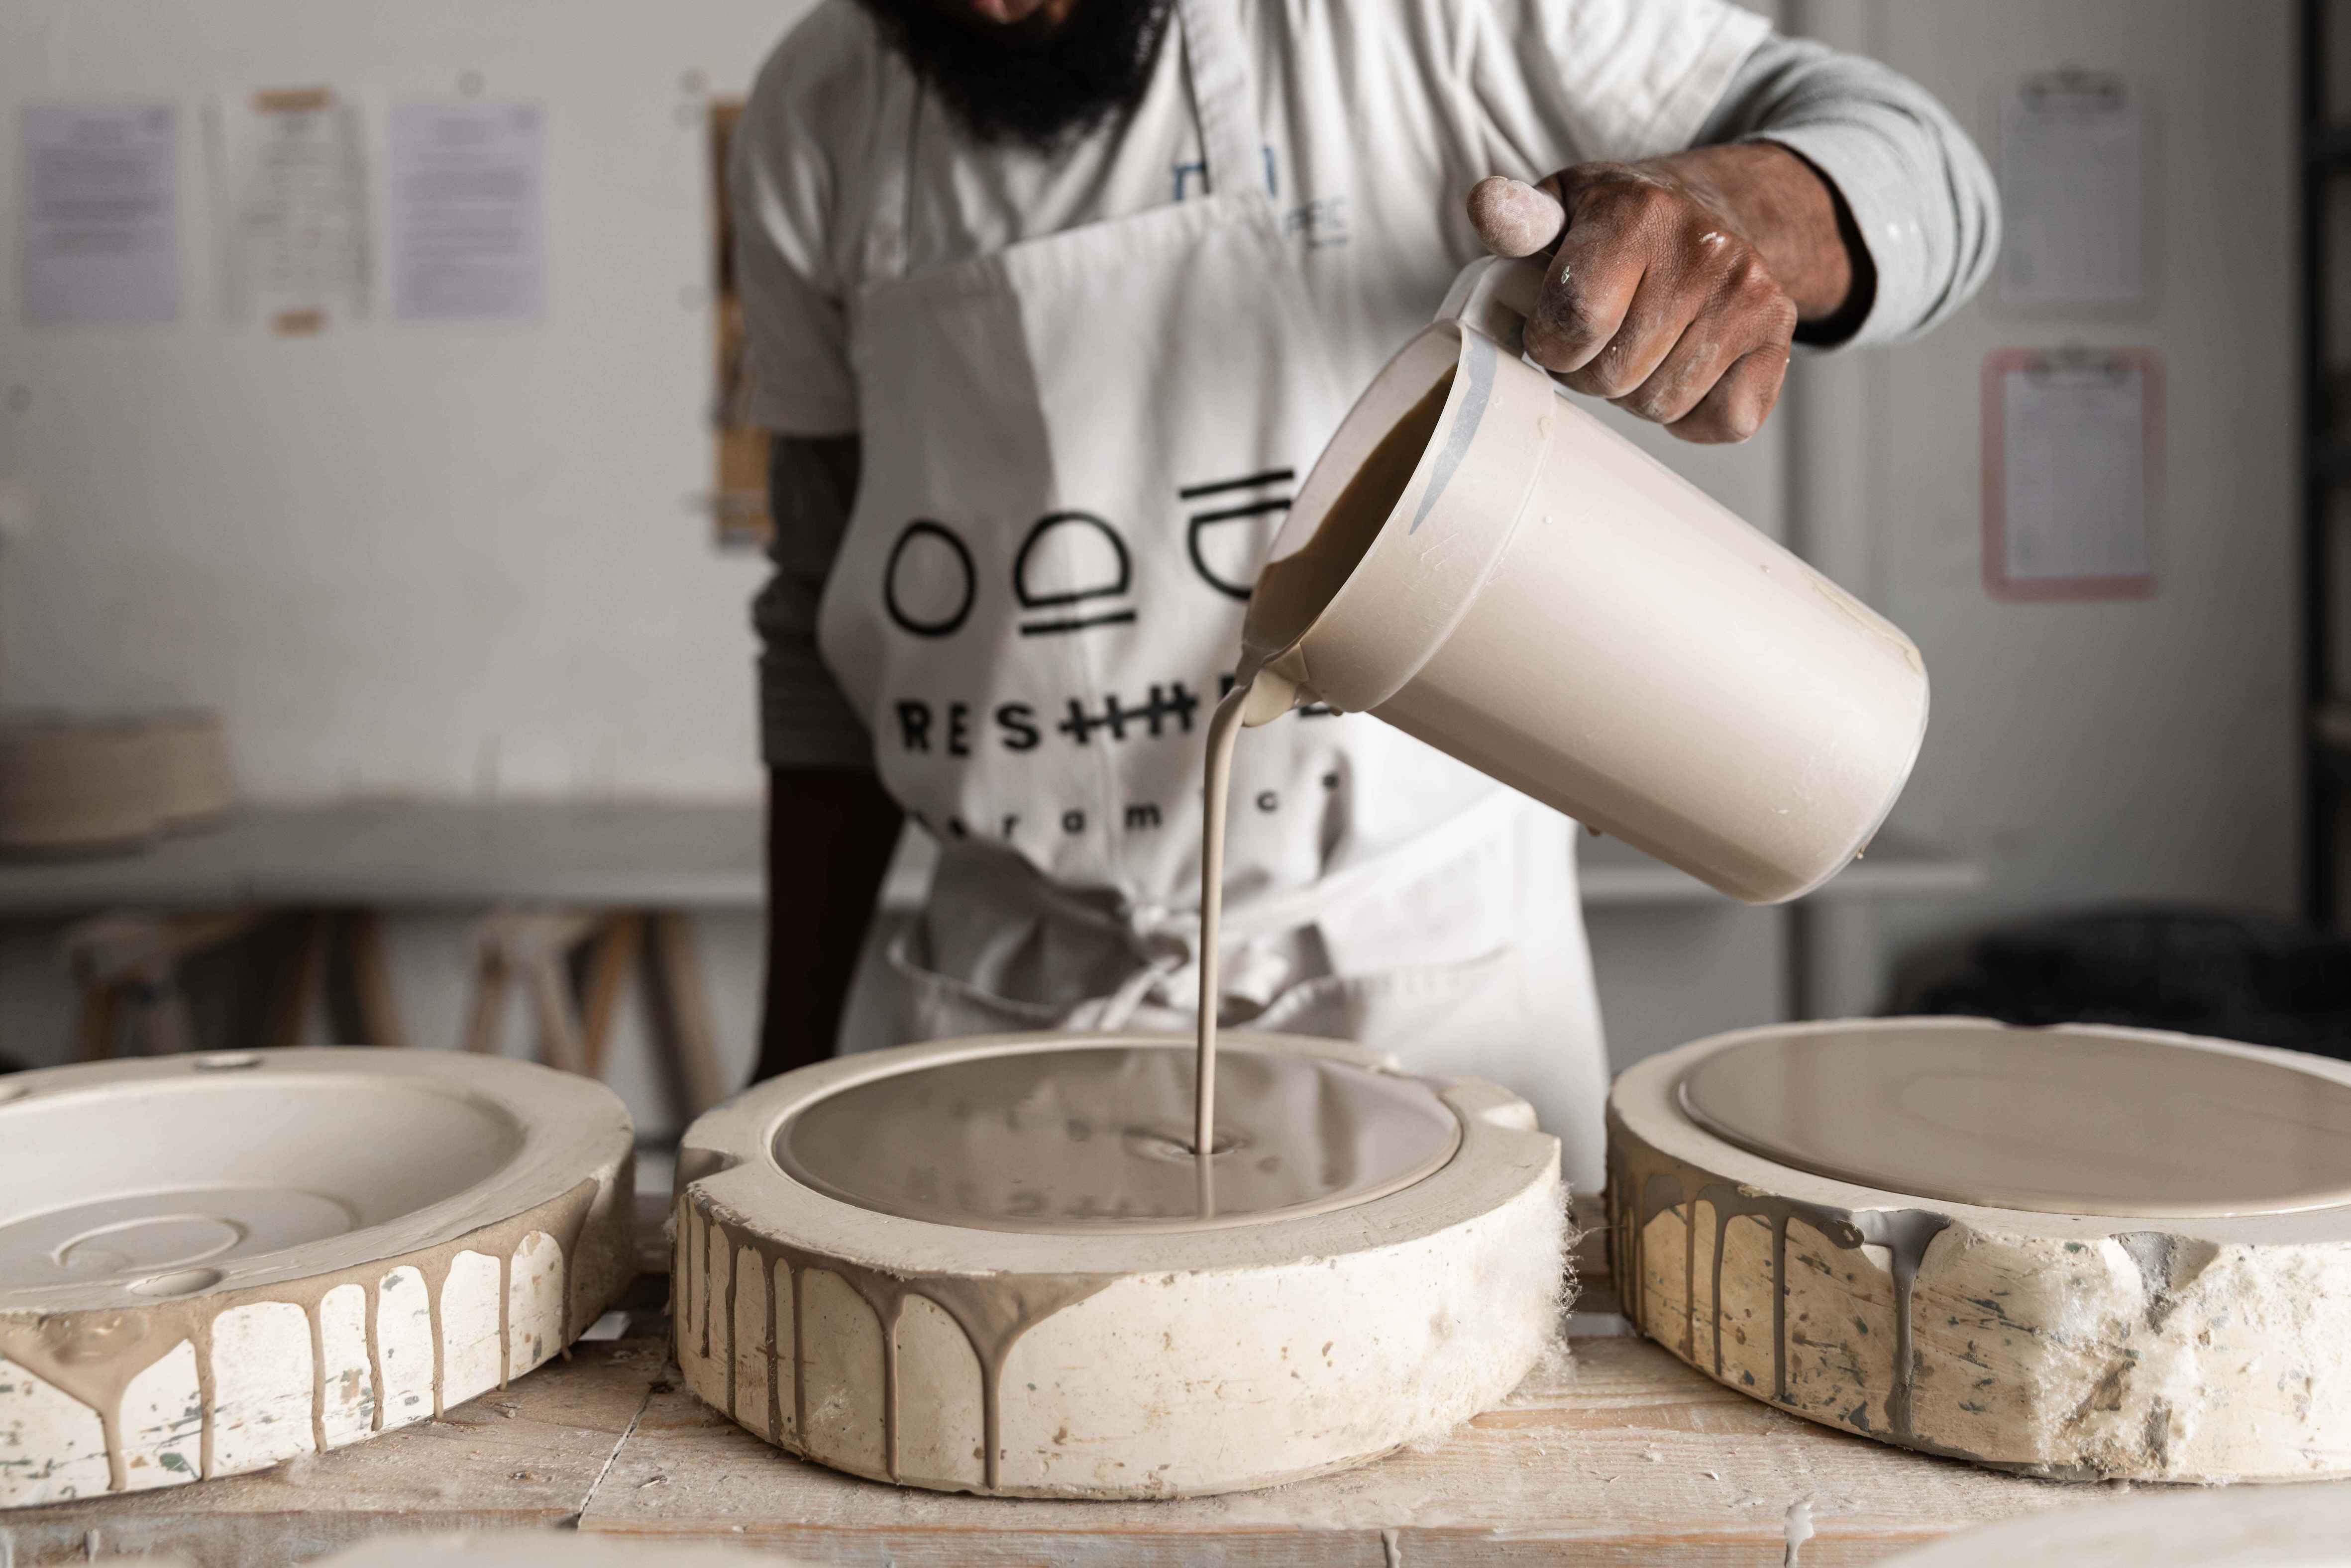 Photo de l'atelier de céramique Reshape Ceramics à Lisbonne, prise par Carmo Oliveira